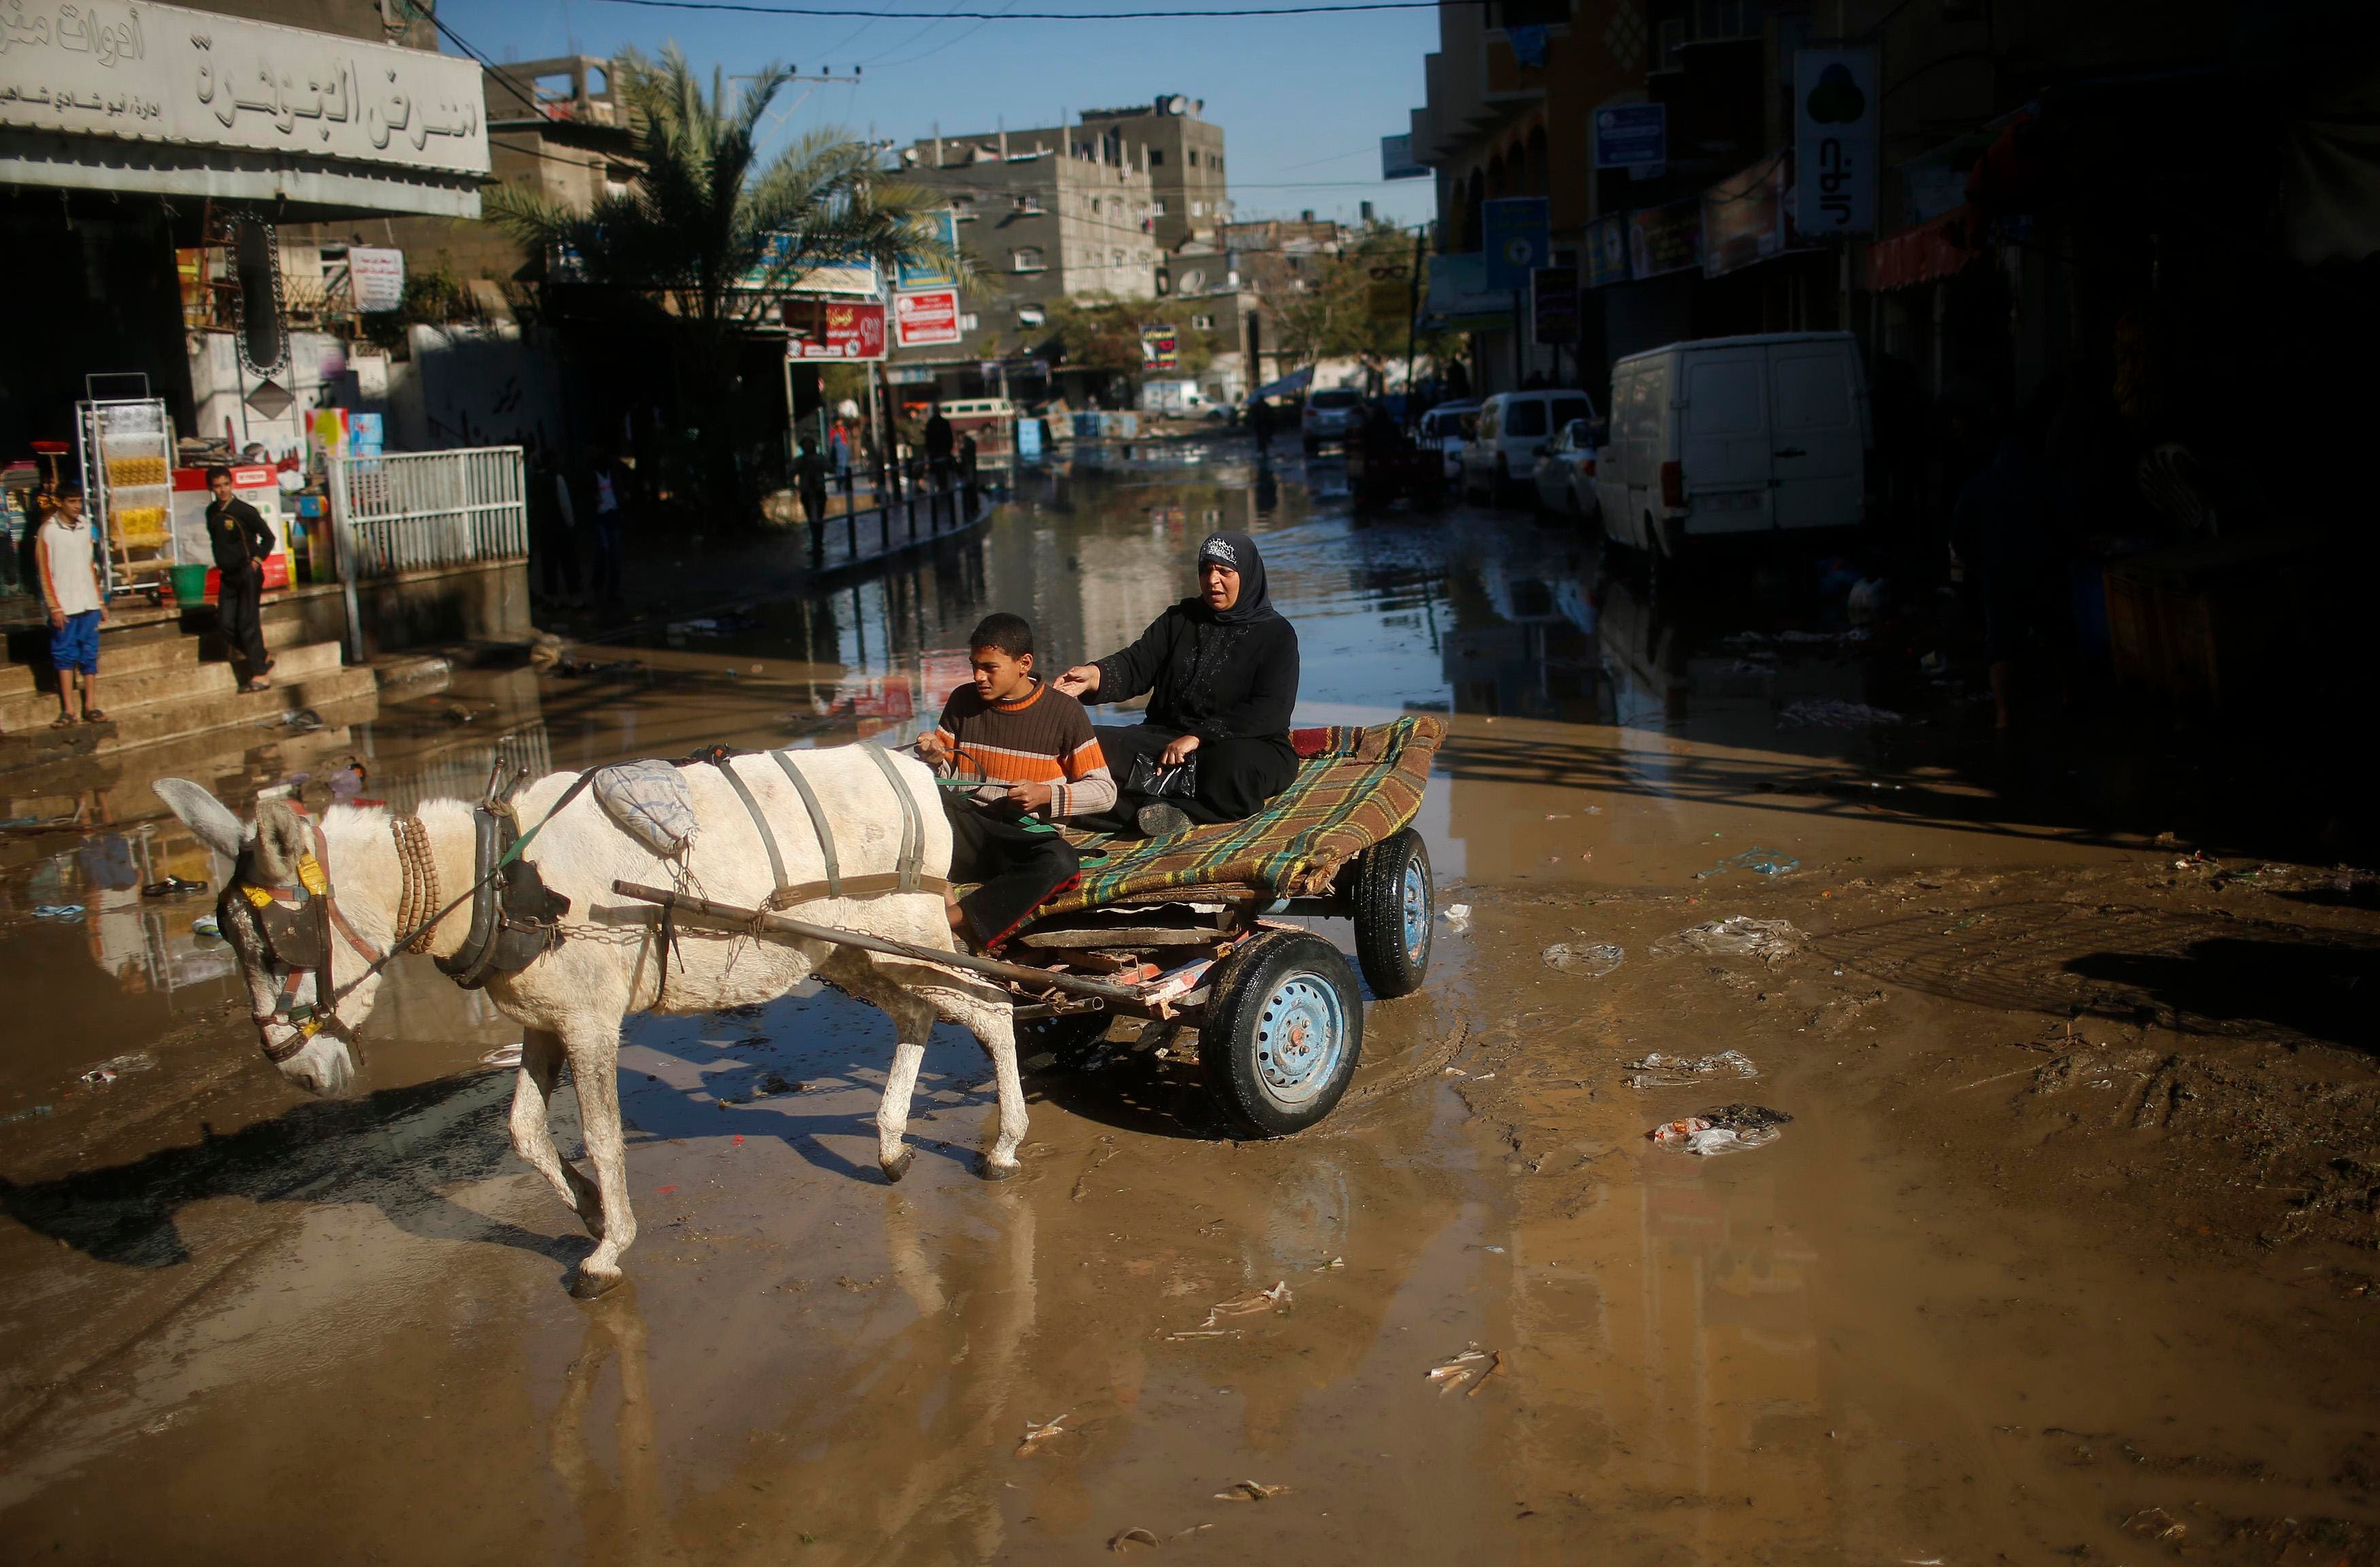 Flash flooding in Gaza